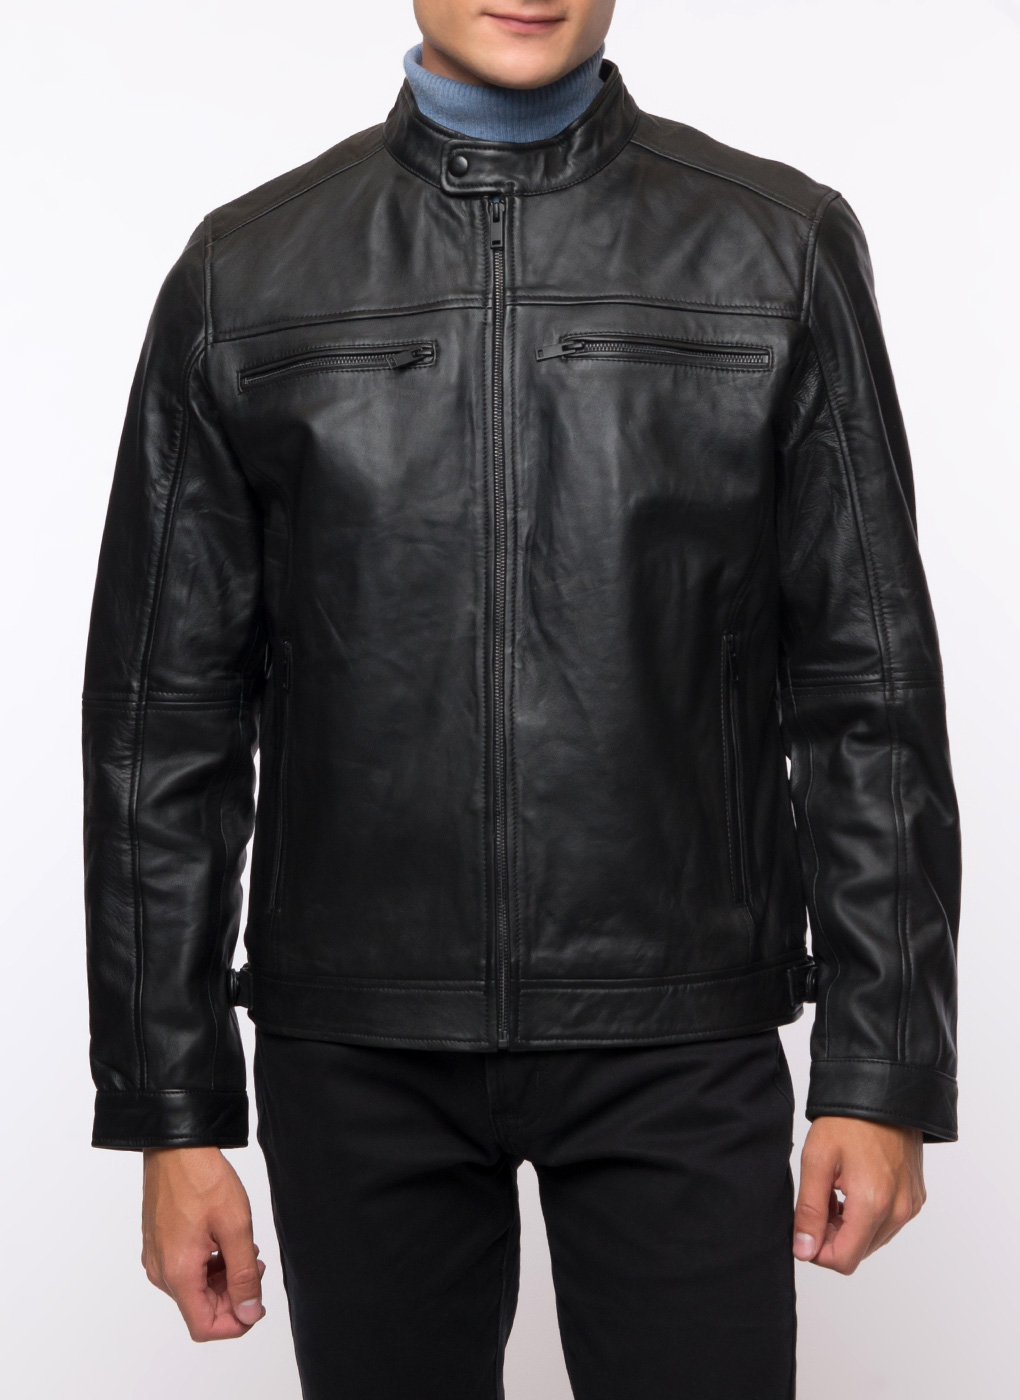 Кожаная куртка мужская Каляев 62651 черная 52 RU